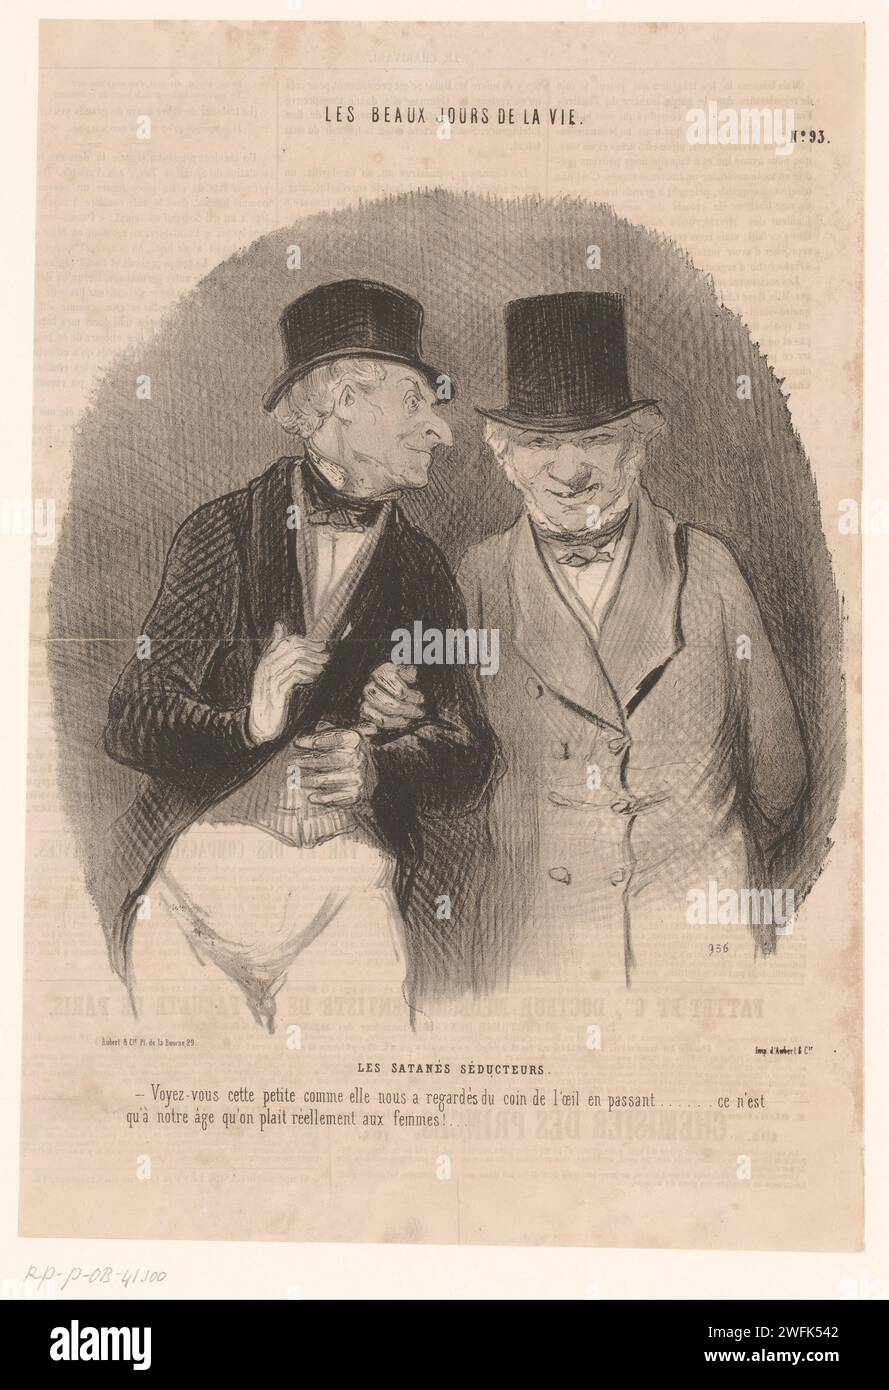 Caricature de deux vieux chasseurs de jupe, Honoré Daumier, 1846 les hommes, qui ont atteint un âge respectable, se parlent d'une jeune femme qui leur aurait jeté un coup d'œil dans la rue. Caricatures en papier de Paris (types humains). vieil homme. femme-chasseur Banque D'Images